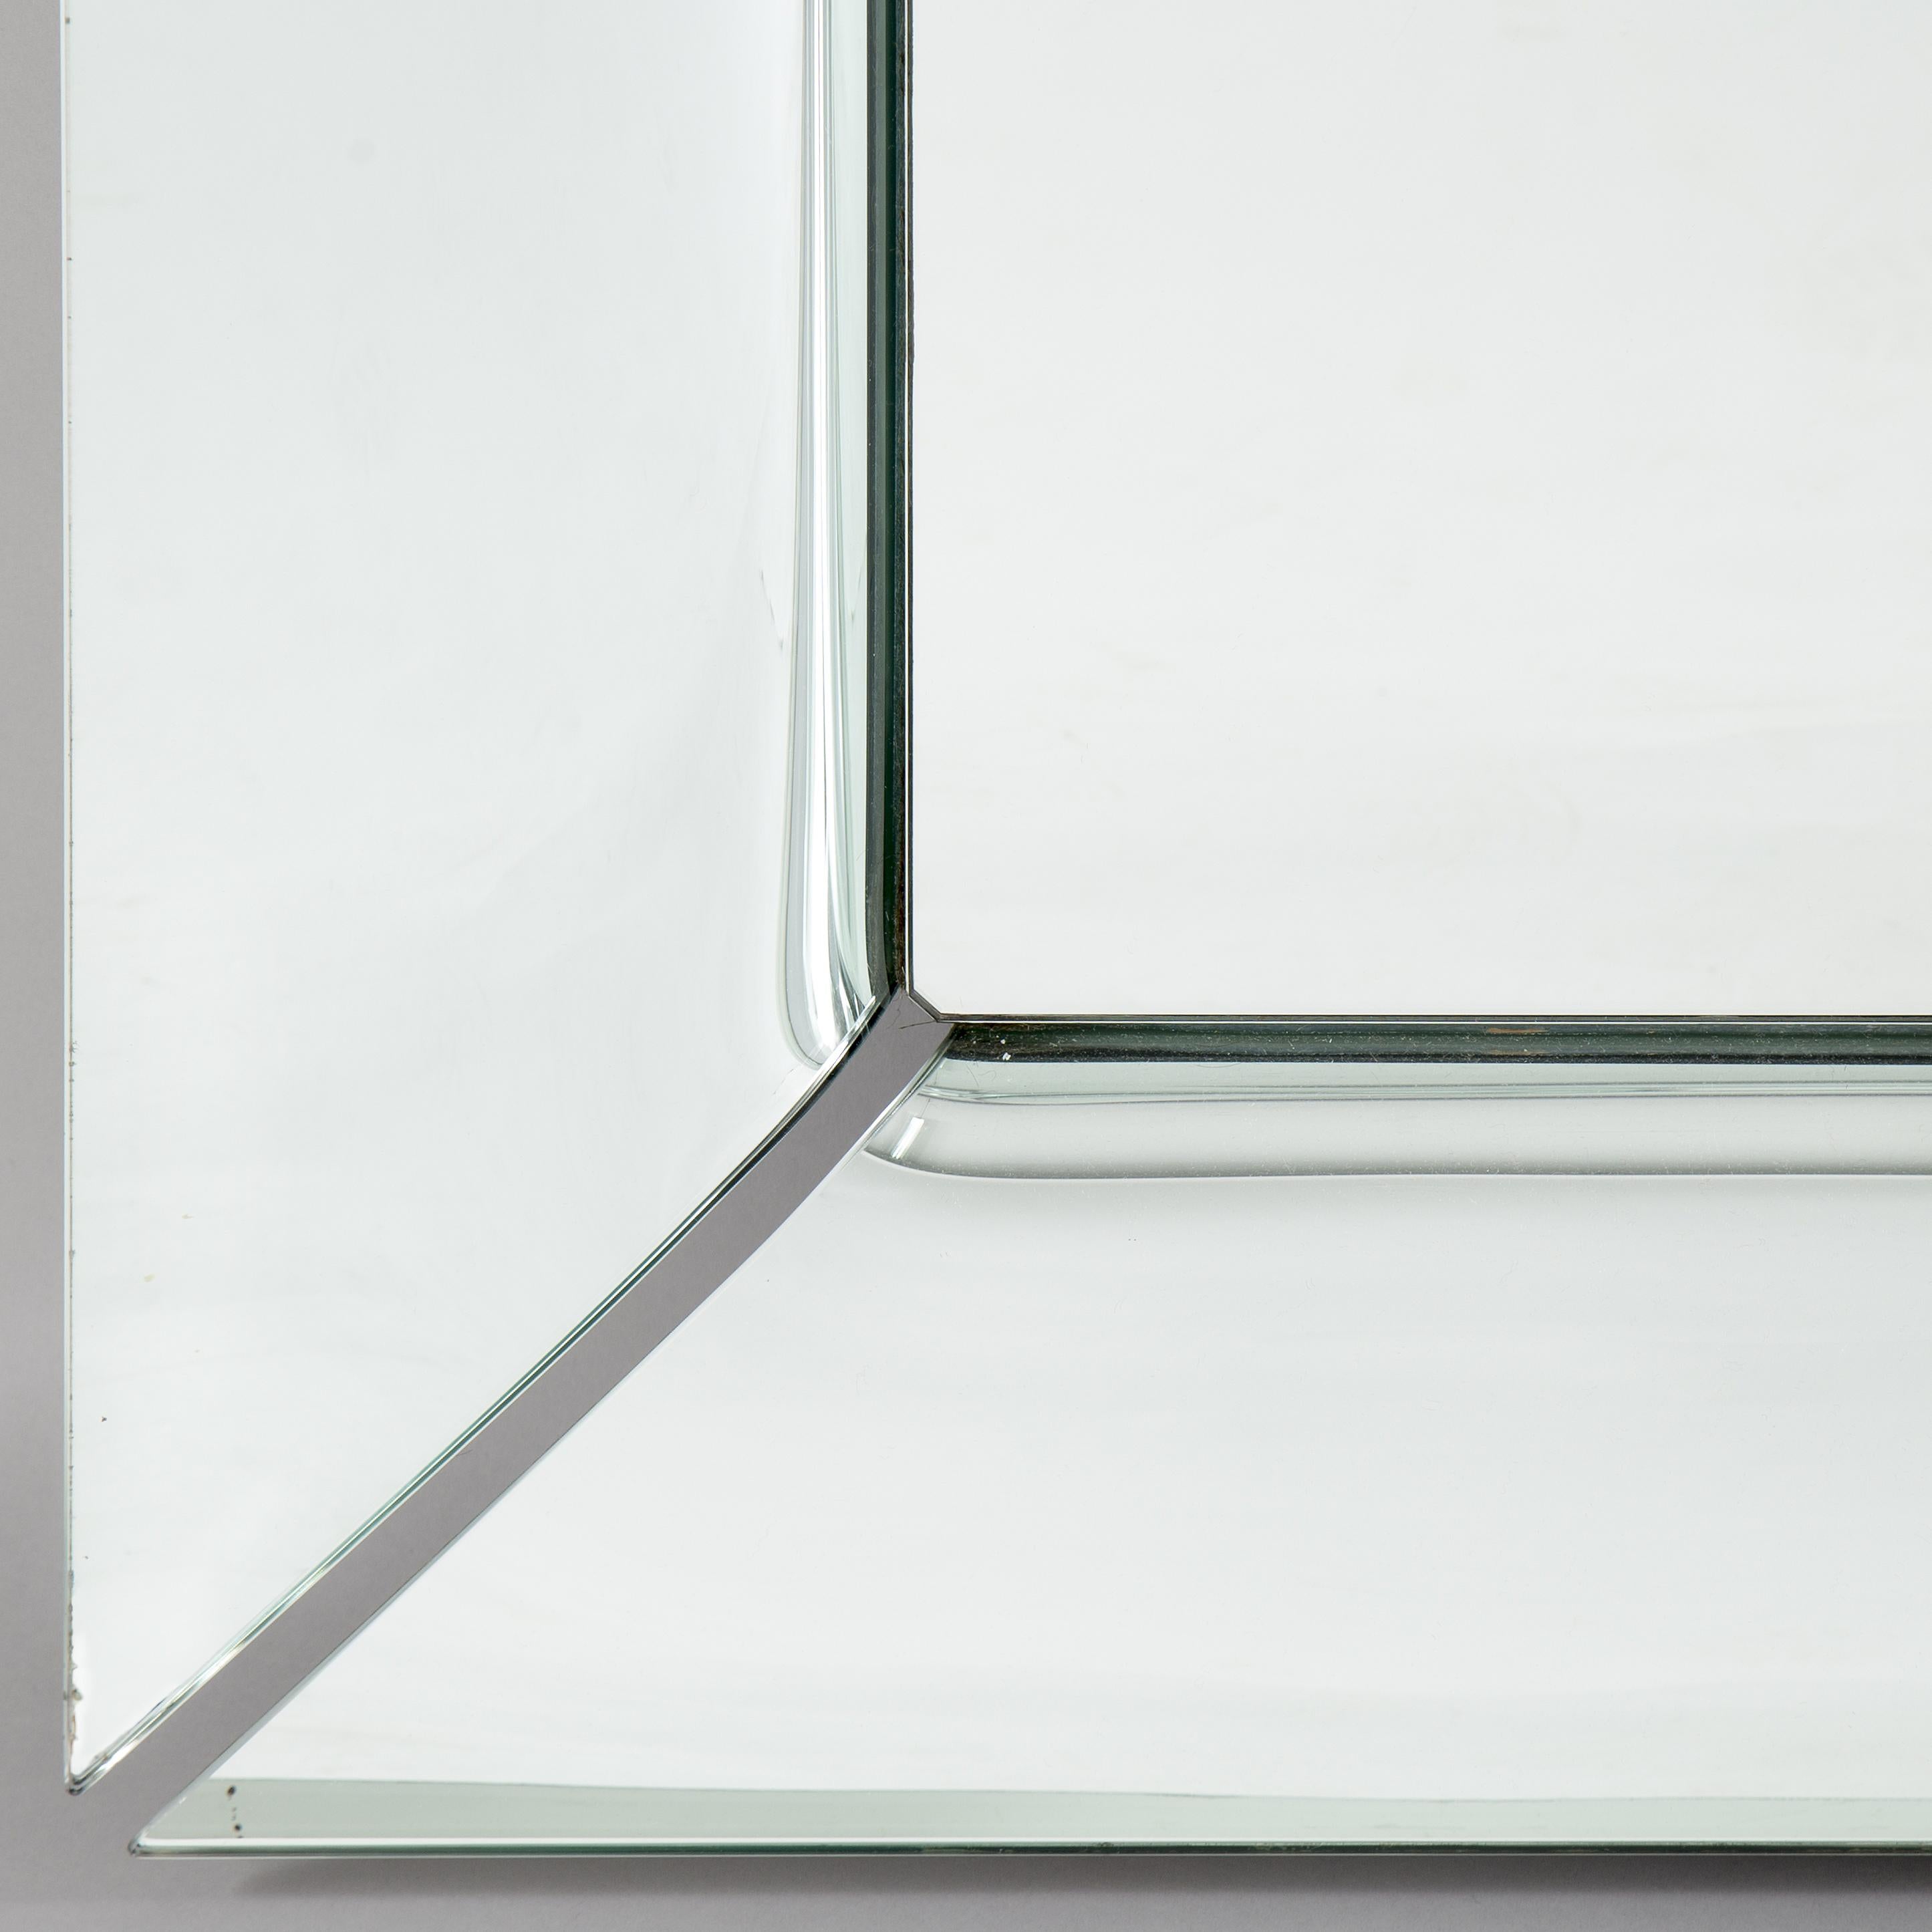 Miroir sur pied ou miroir suspendu en verre bombé de 6 mm d'épaisseur, composé de quatre éléments bombés séparés et argentés. Egalement disponible avec une finition en verre semi-réfléchissant titane ou en argenté.
  